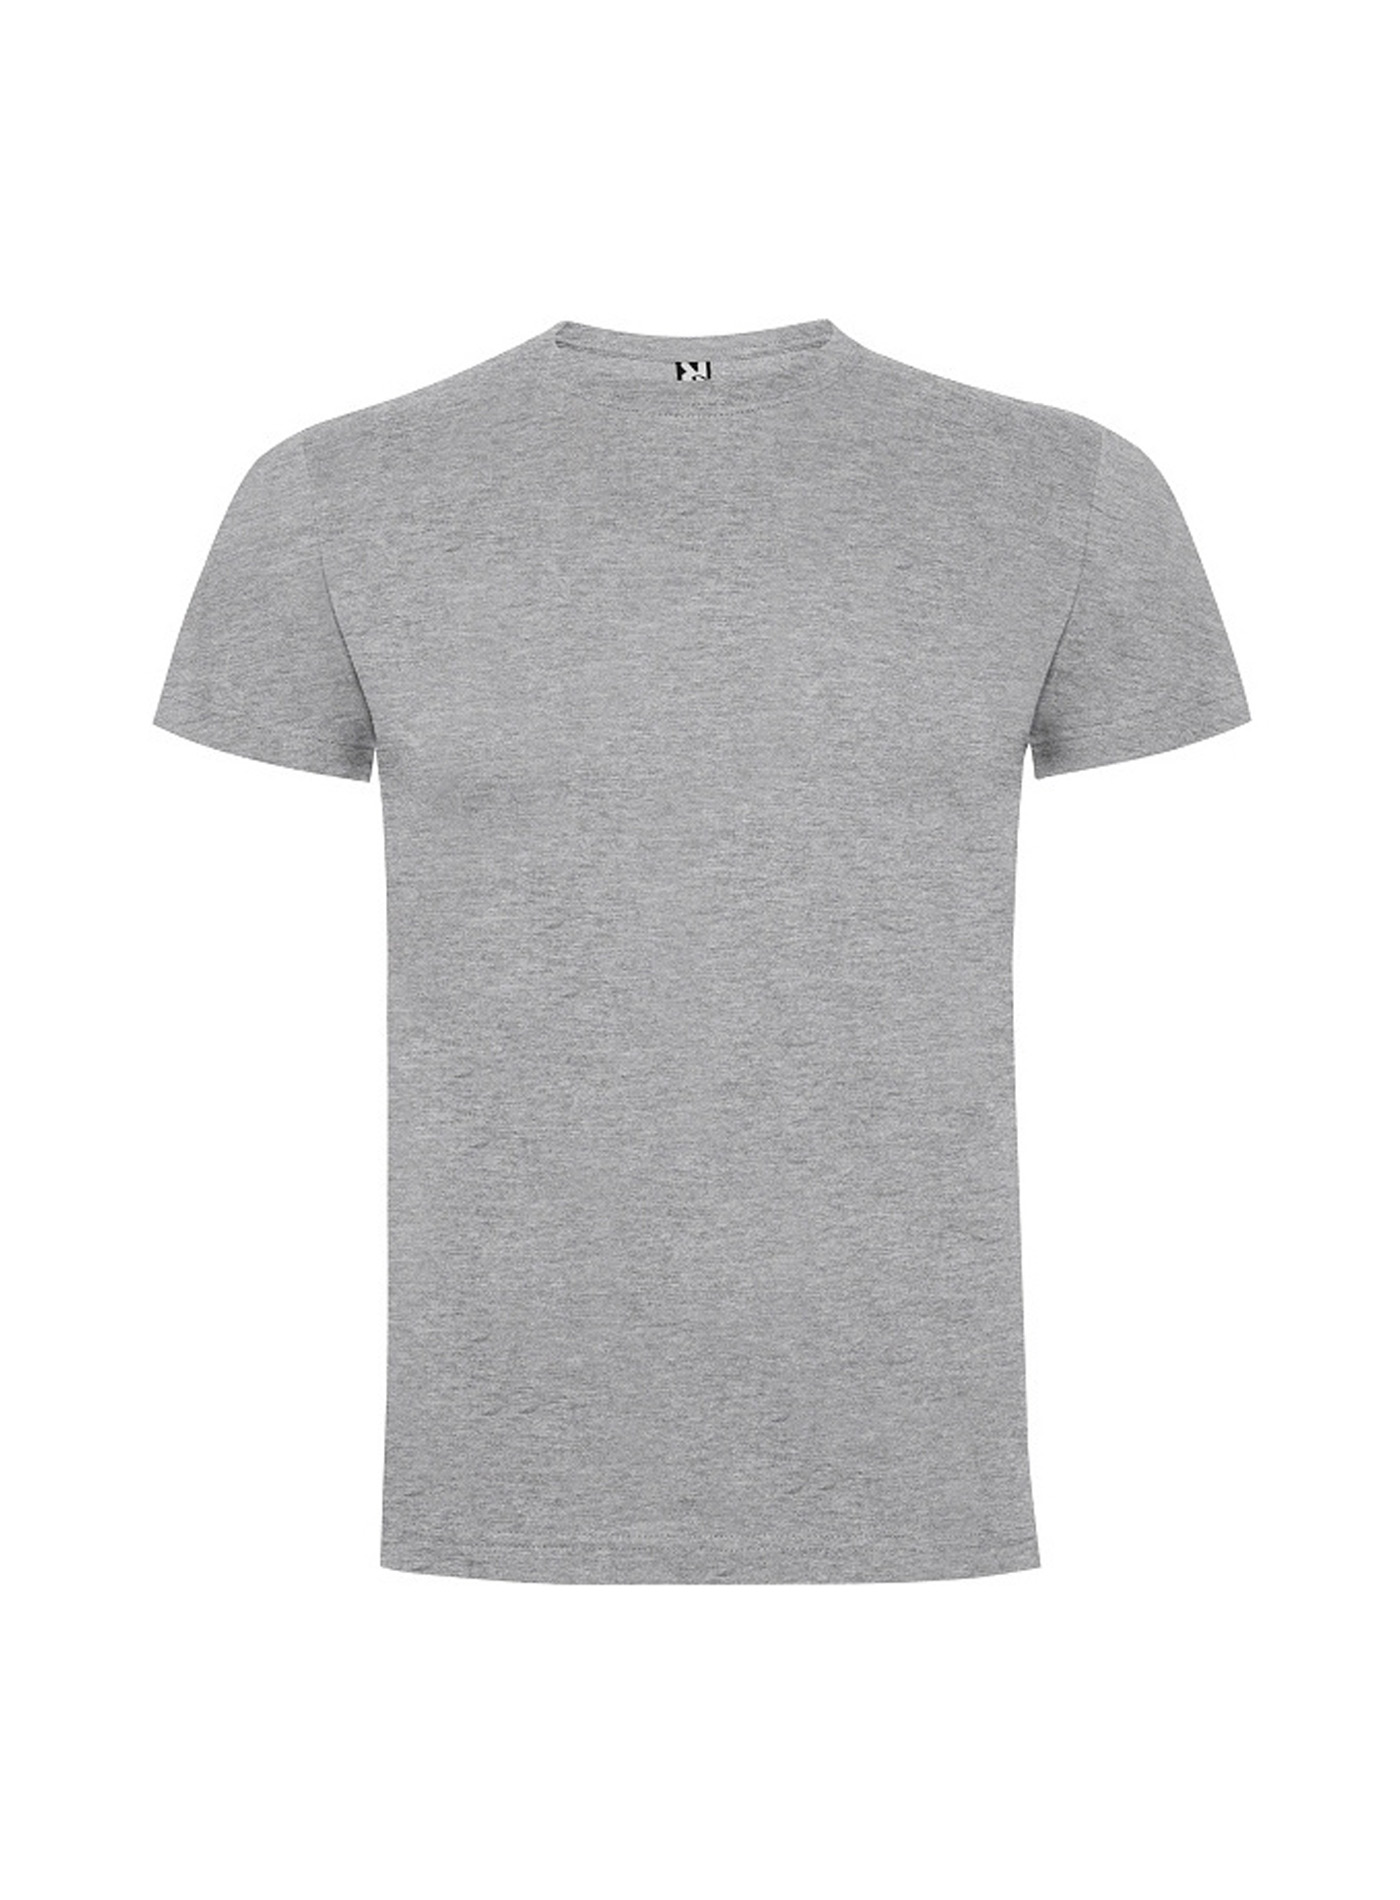 Dětské tričko Roly Dogo premium - Světle šedý melír 3-4